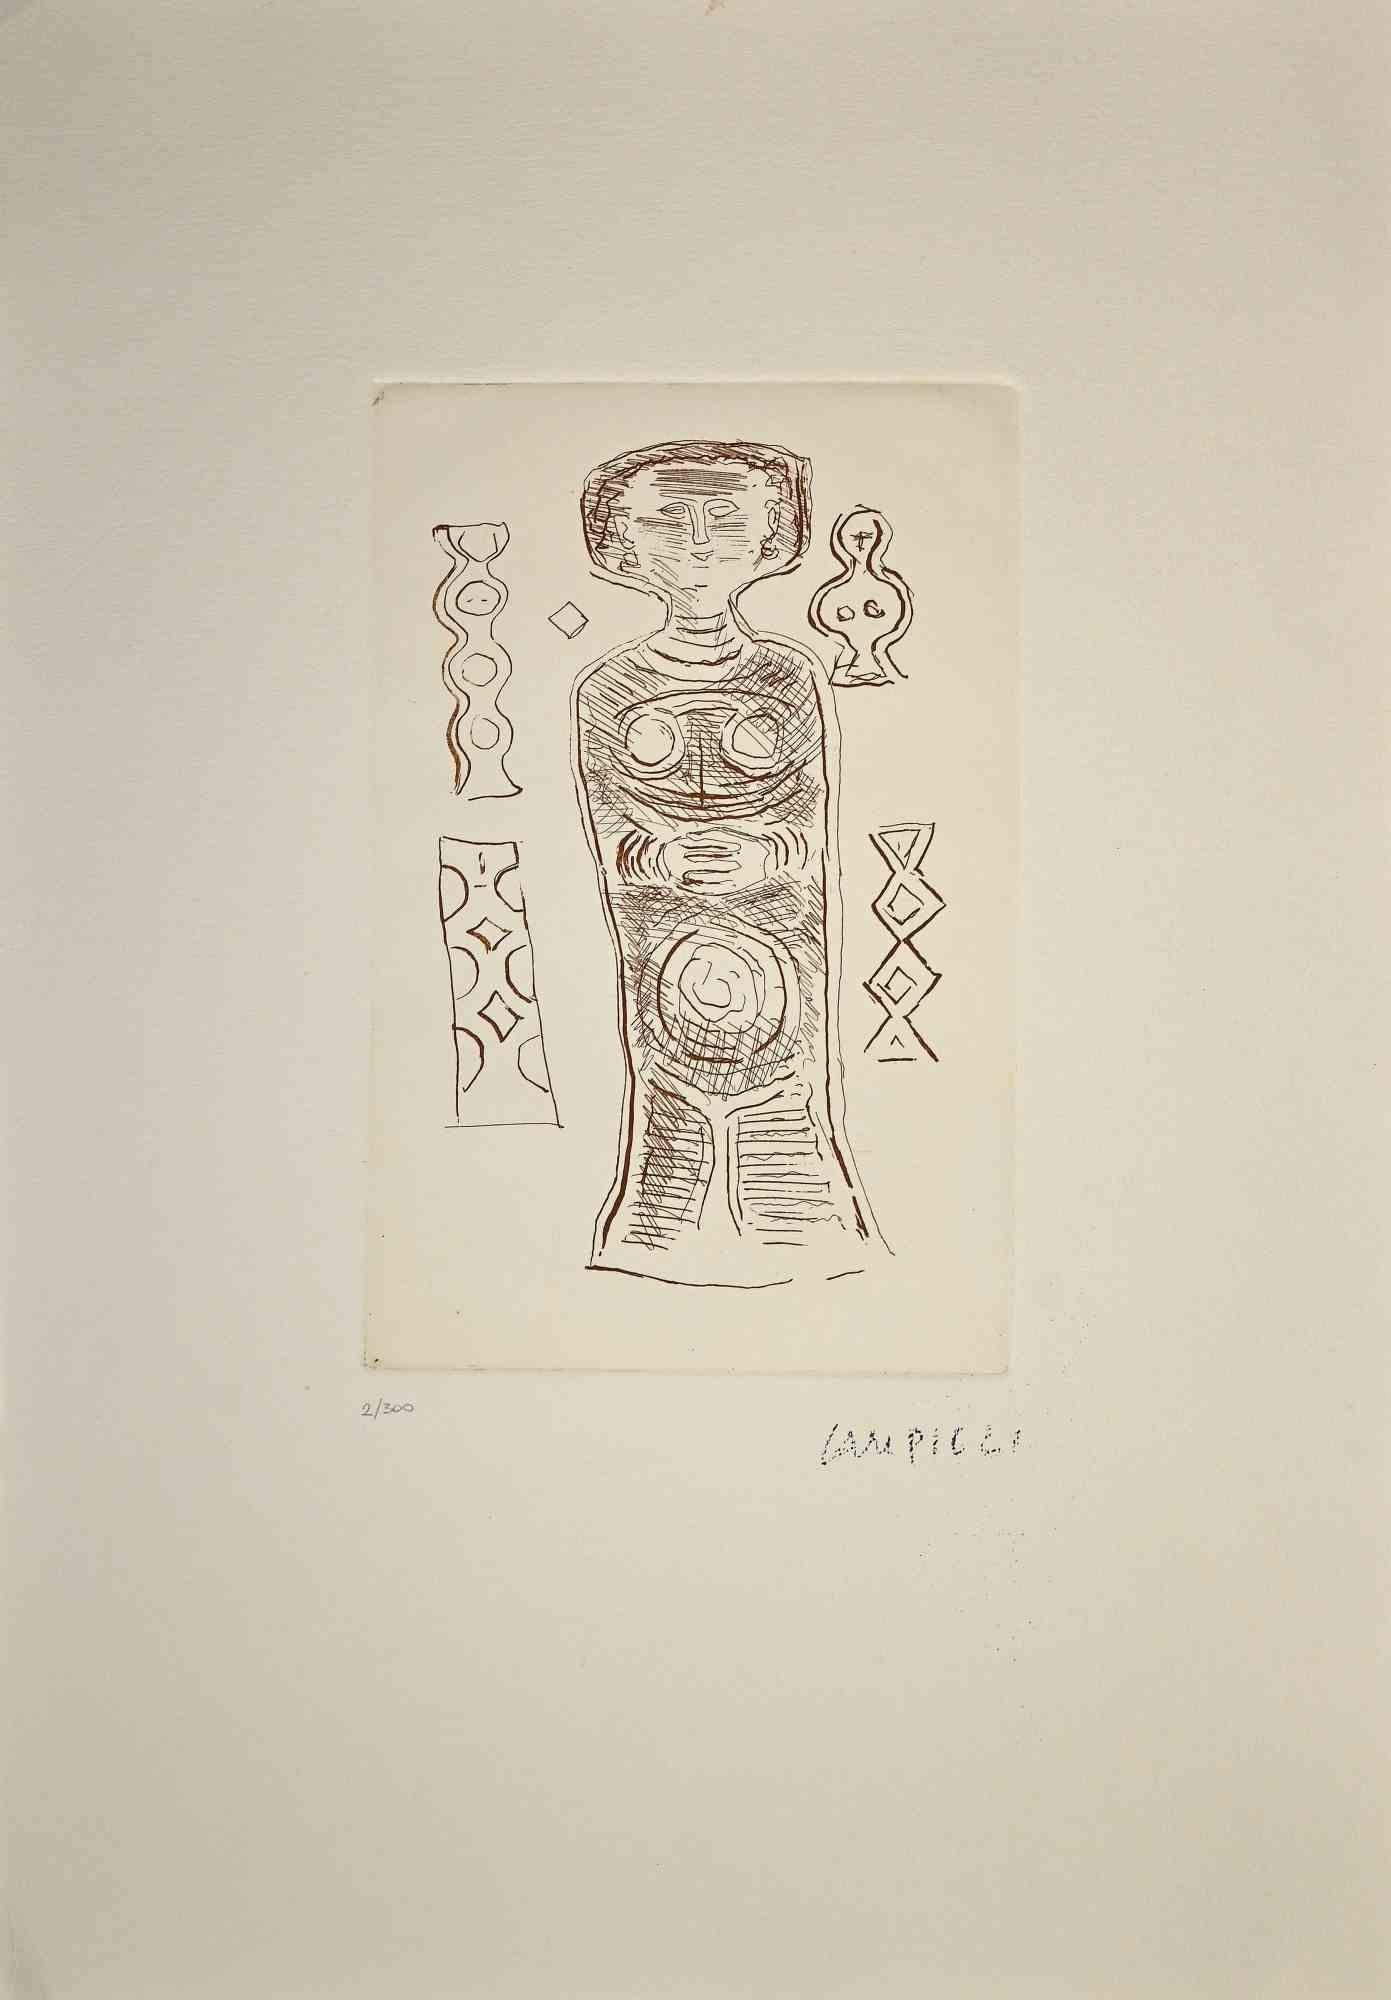 L'idole  est une estampe originale réalisée par Massimo Campigli dans les années 1970/1971.

 

Gravure sur papier.

Cette œuvre fait partie d'une série de travaux créés dans la dernière période de l'artiste et imprimés au tournant de l'année de sa